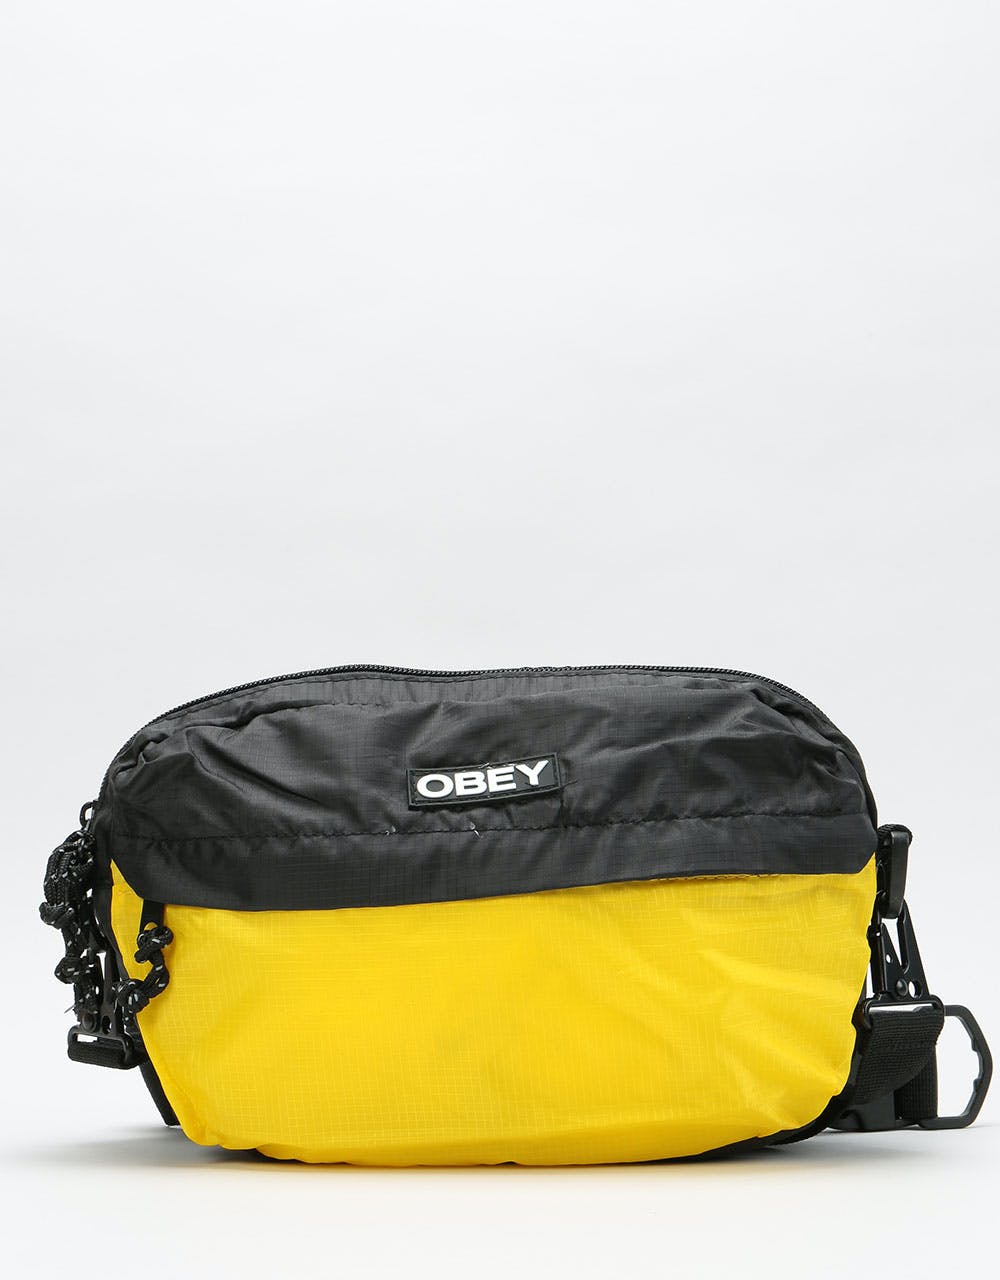 Obey Commuter Traveler Cross Body Bag - Black Multi